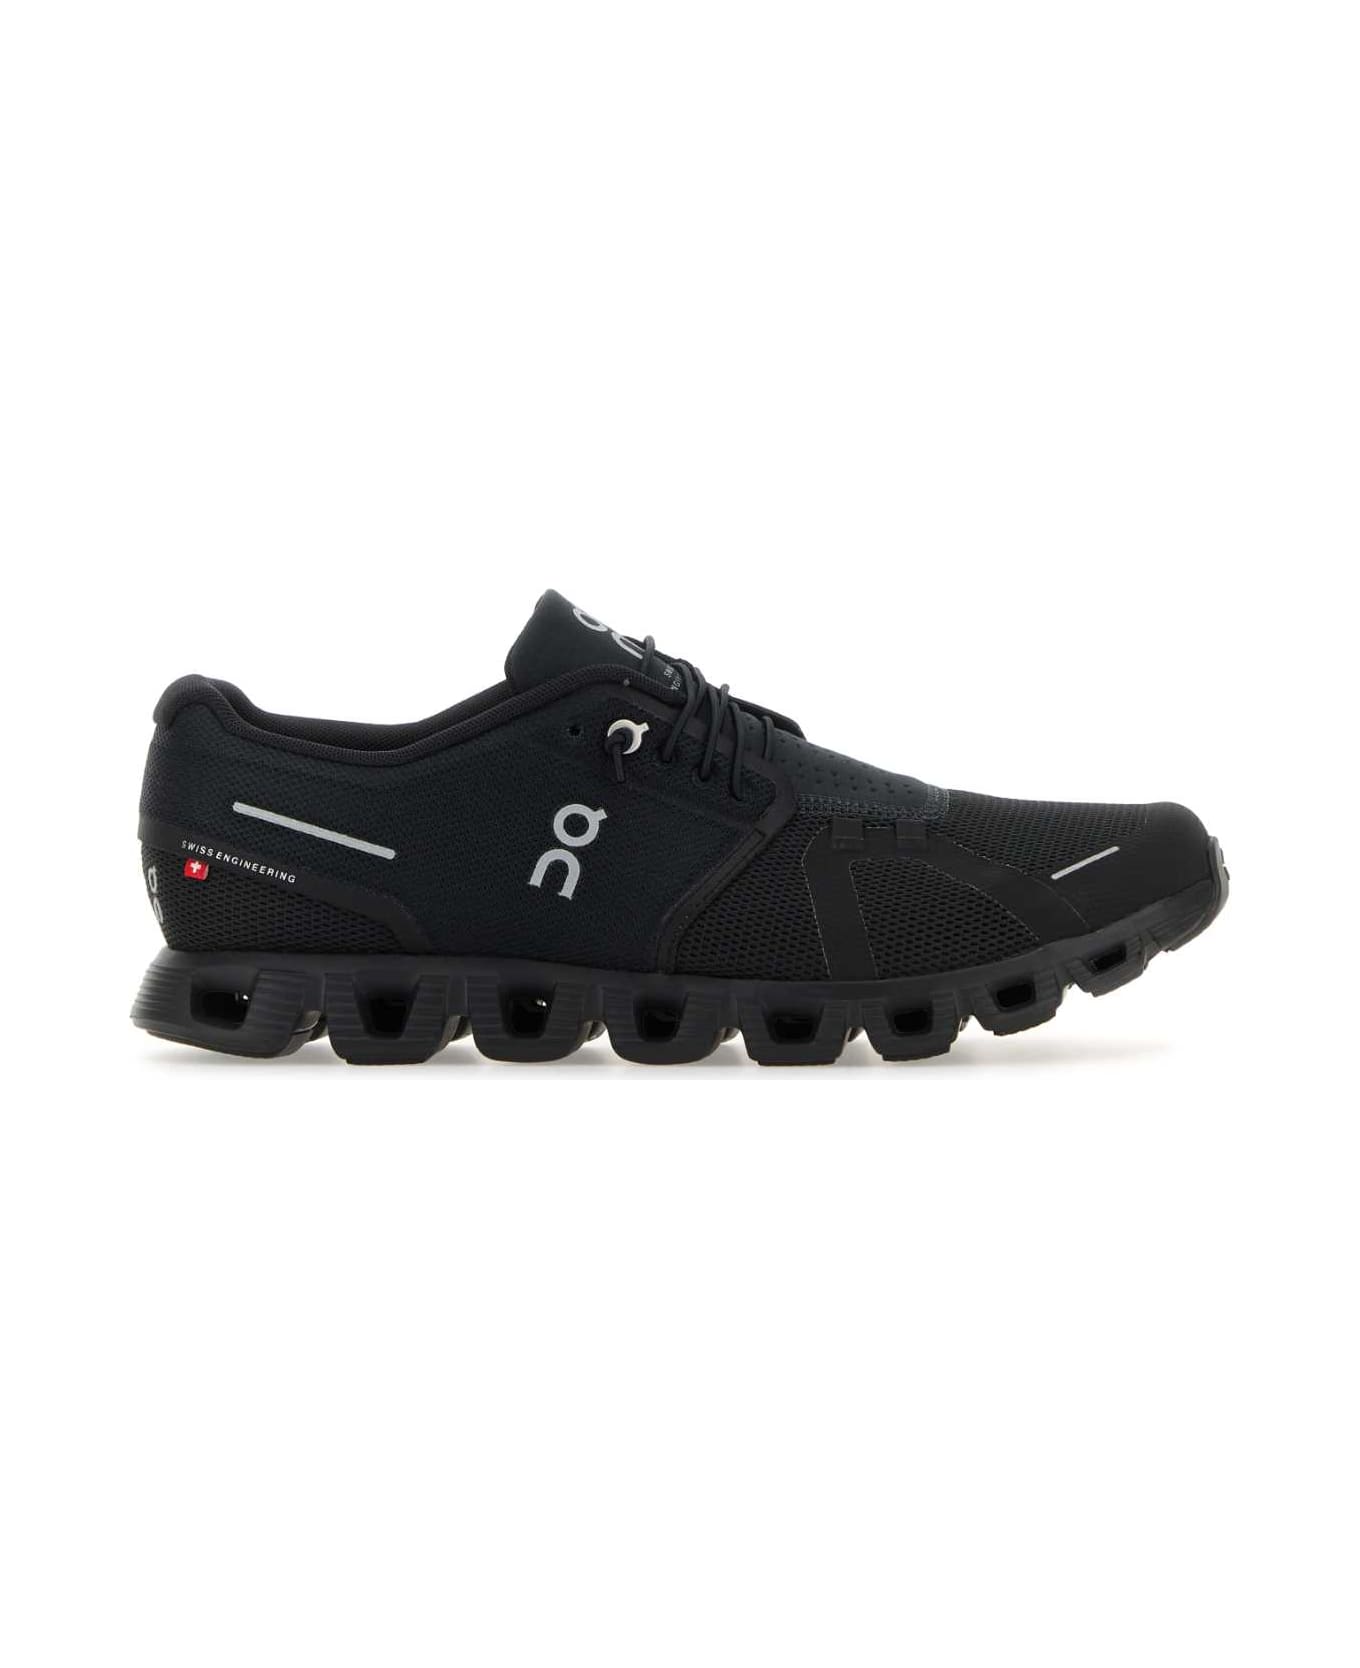 ON Black Fabric Cloud 5 Sneakers - ALLBLACK